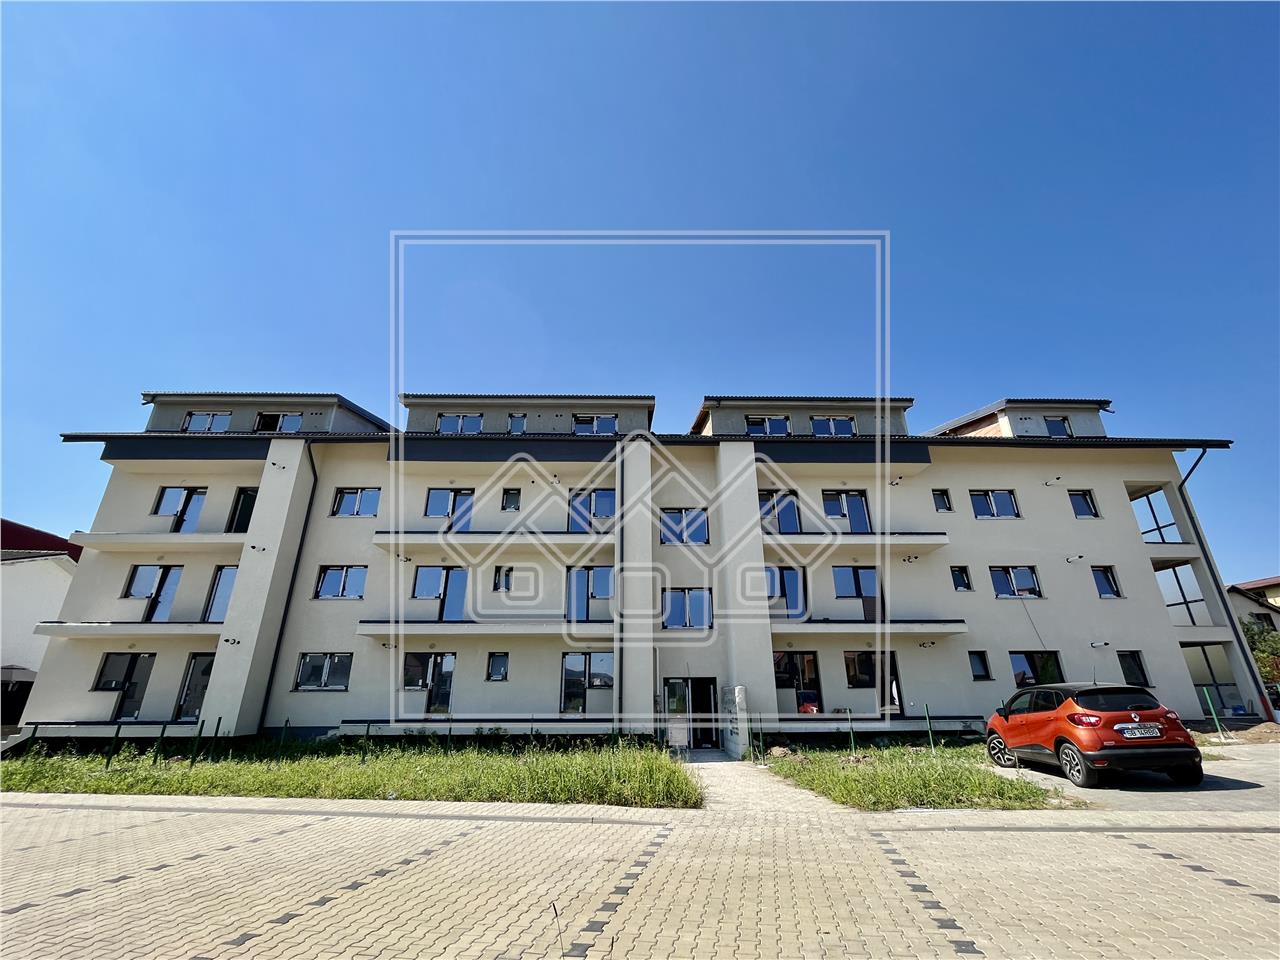 Apartament de vanzare in Sibiu - 2 camere - 51 mp utili - zona P.Brana